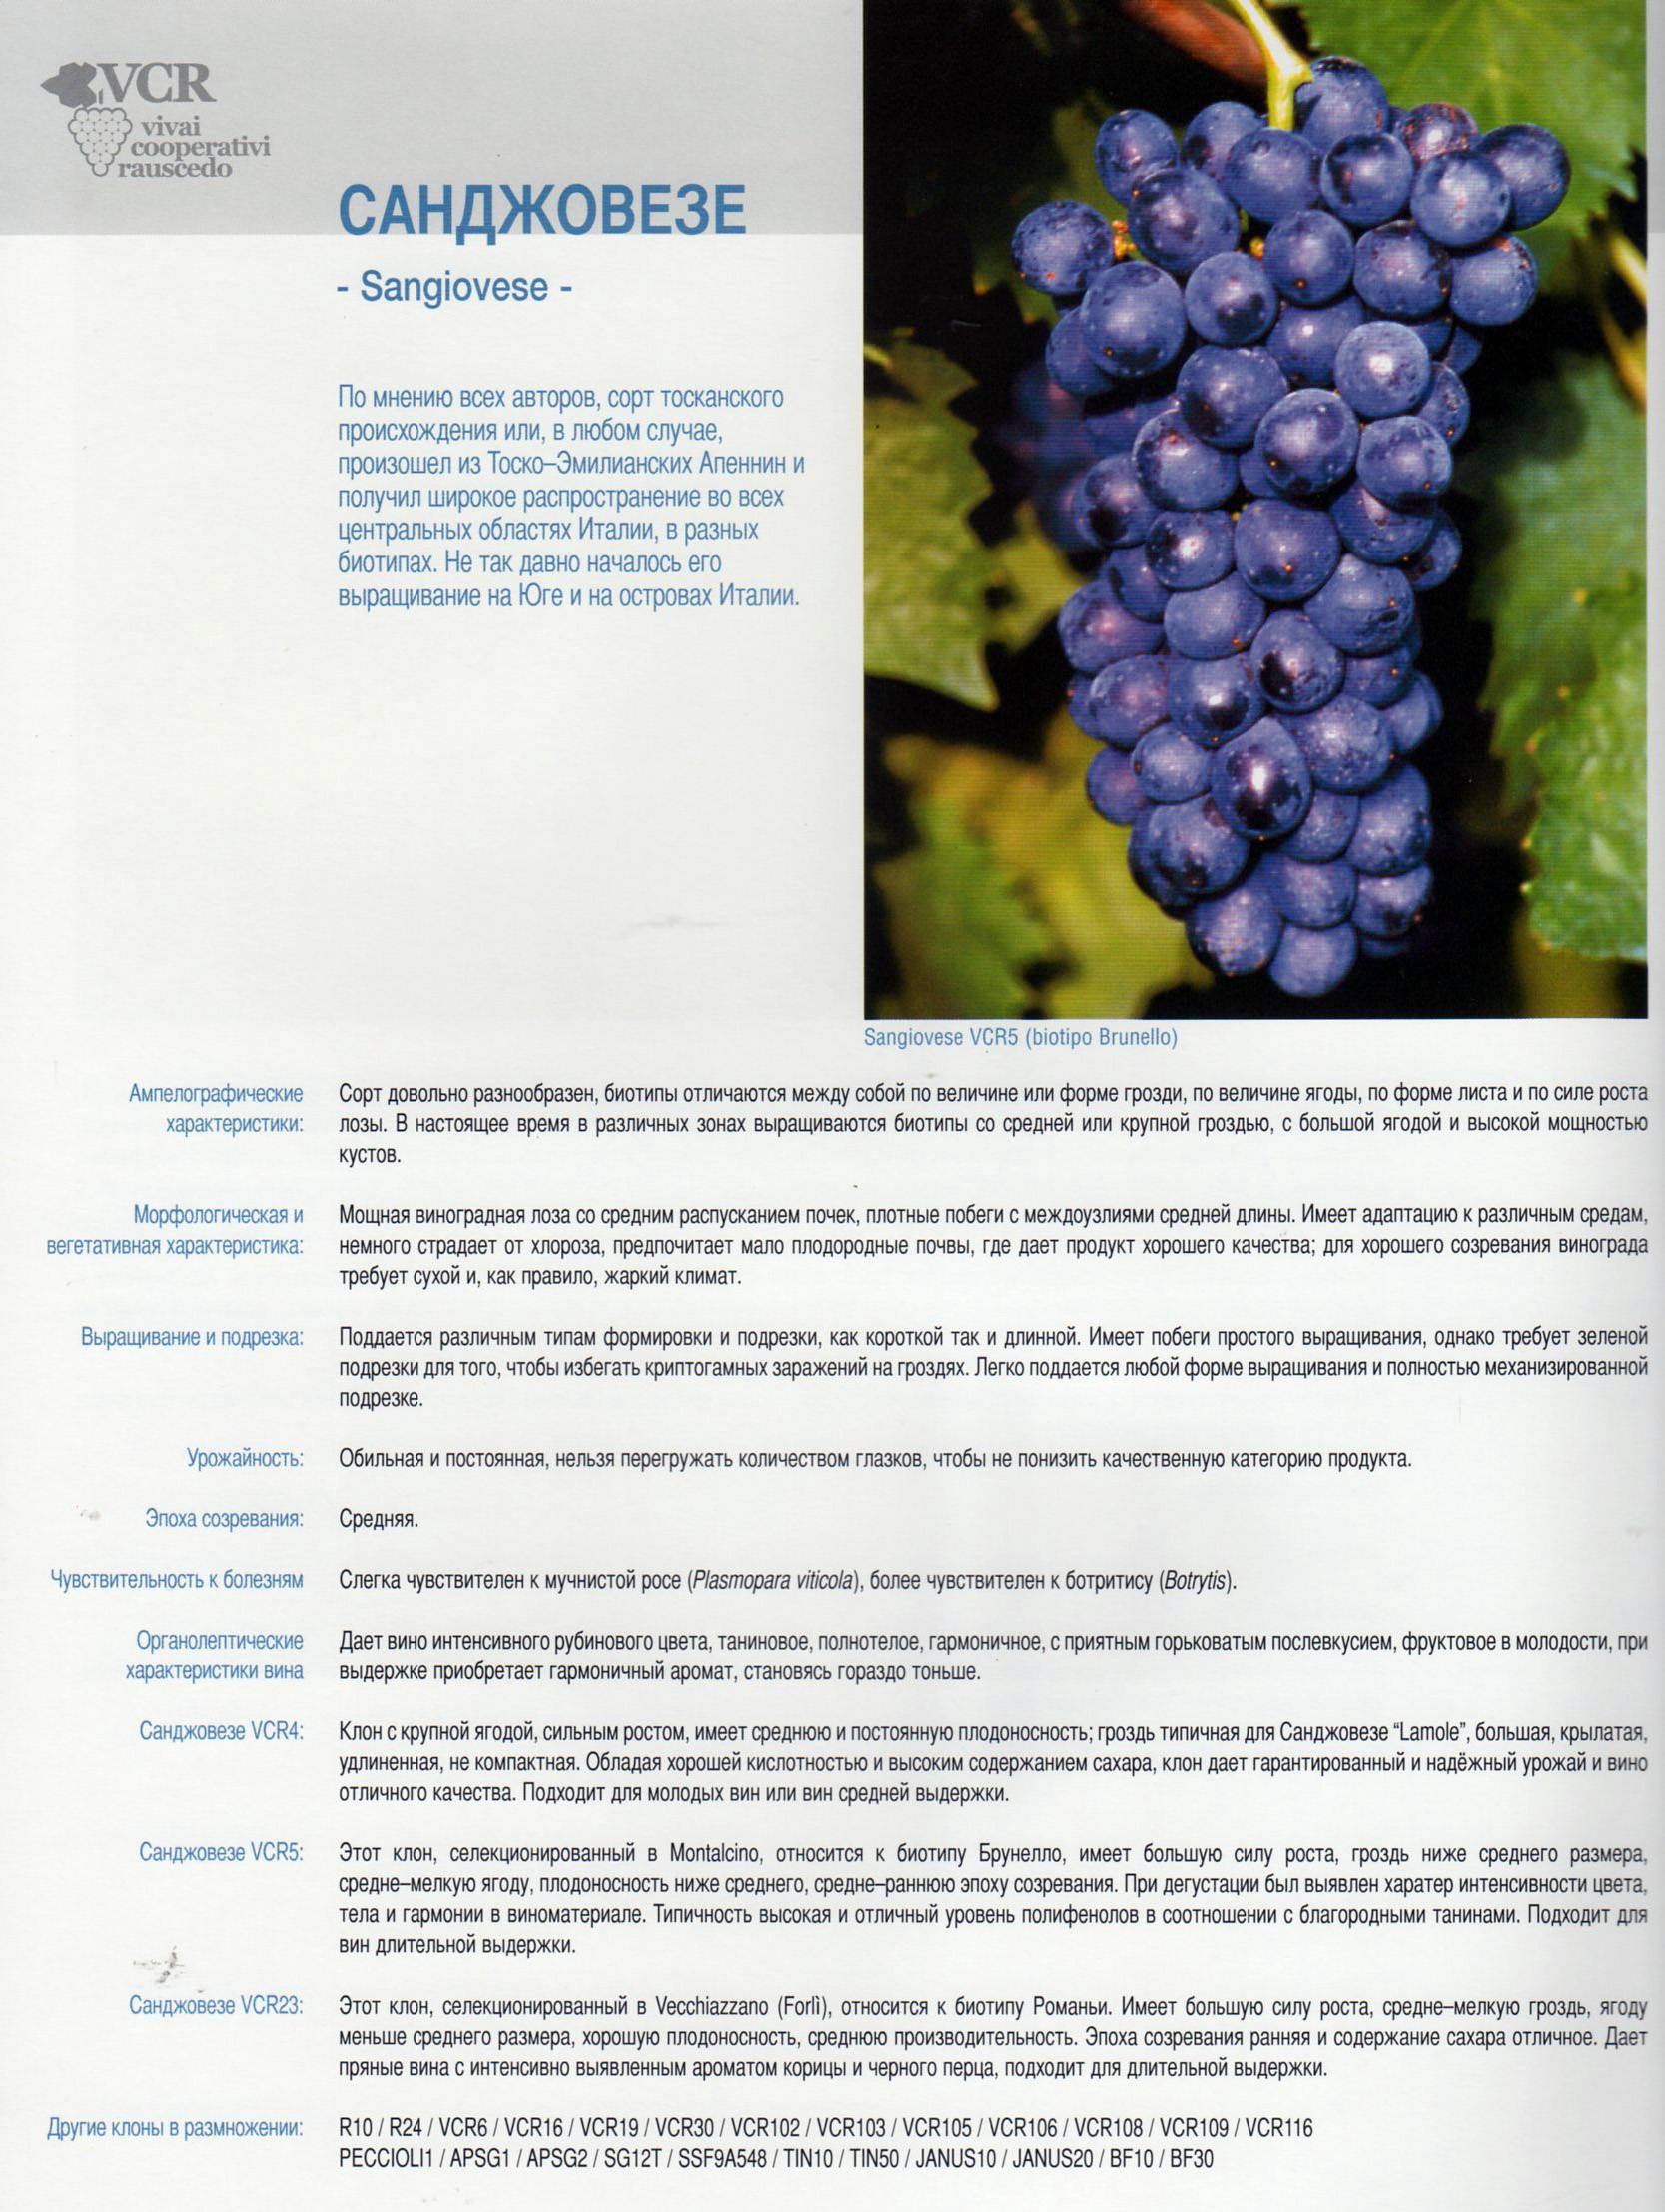 Виноград «саперави»: описание сорта, фото и отзывы. основные его плюсы и минусы, характеристики и особенности выращивания в регионах